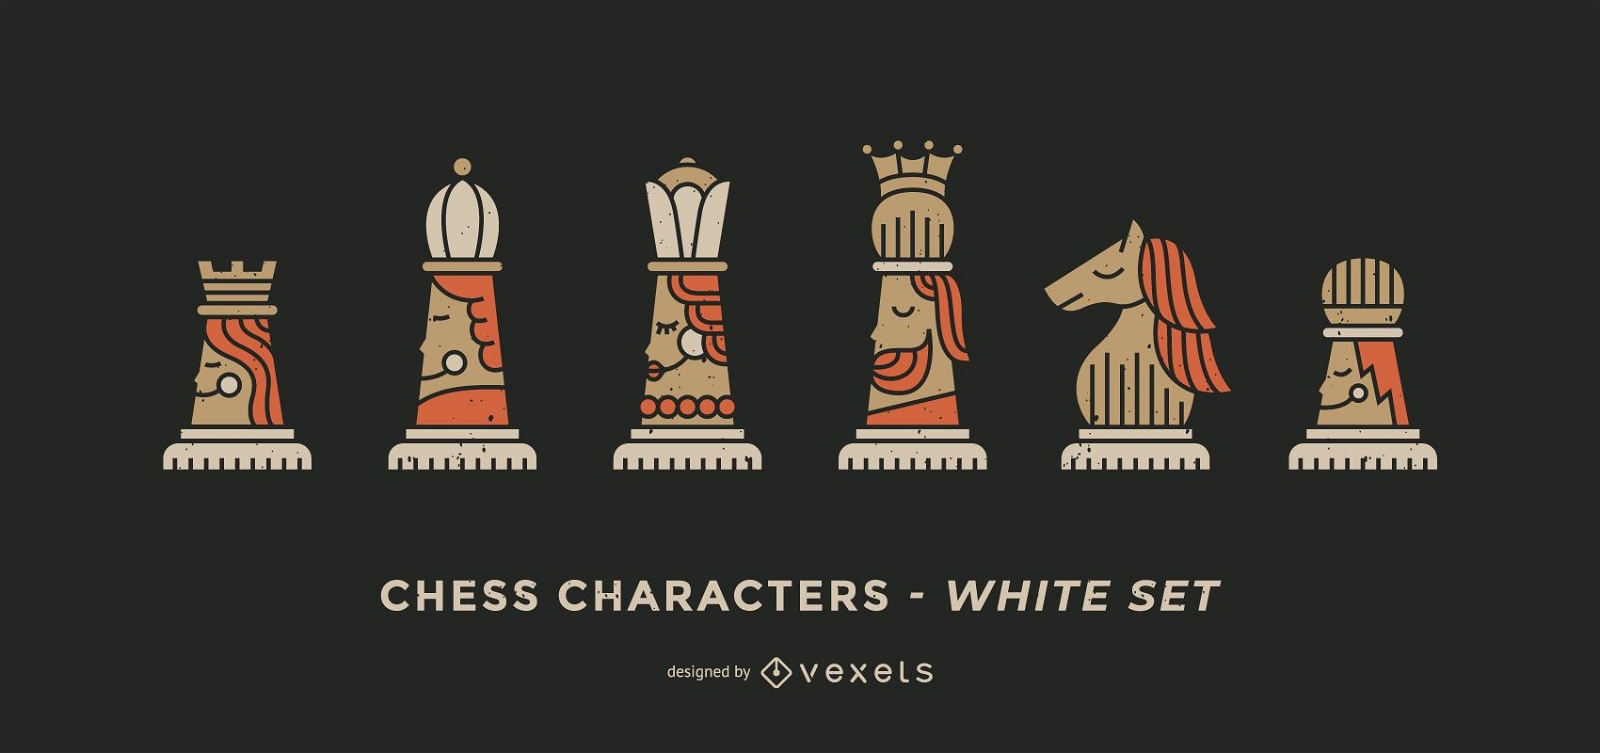 Schachfiguren weißer Satz